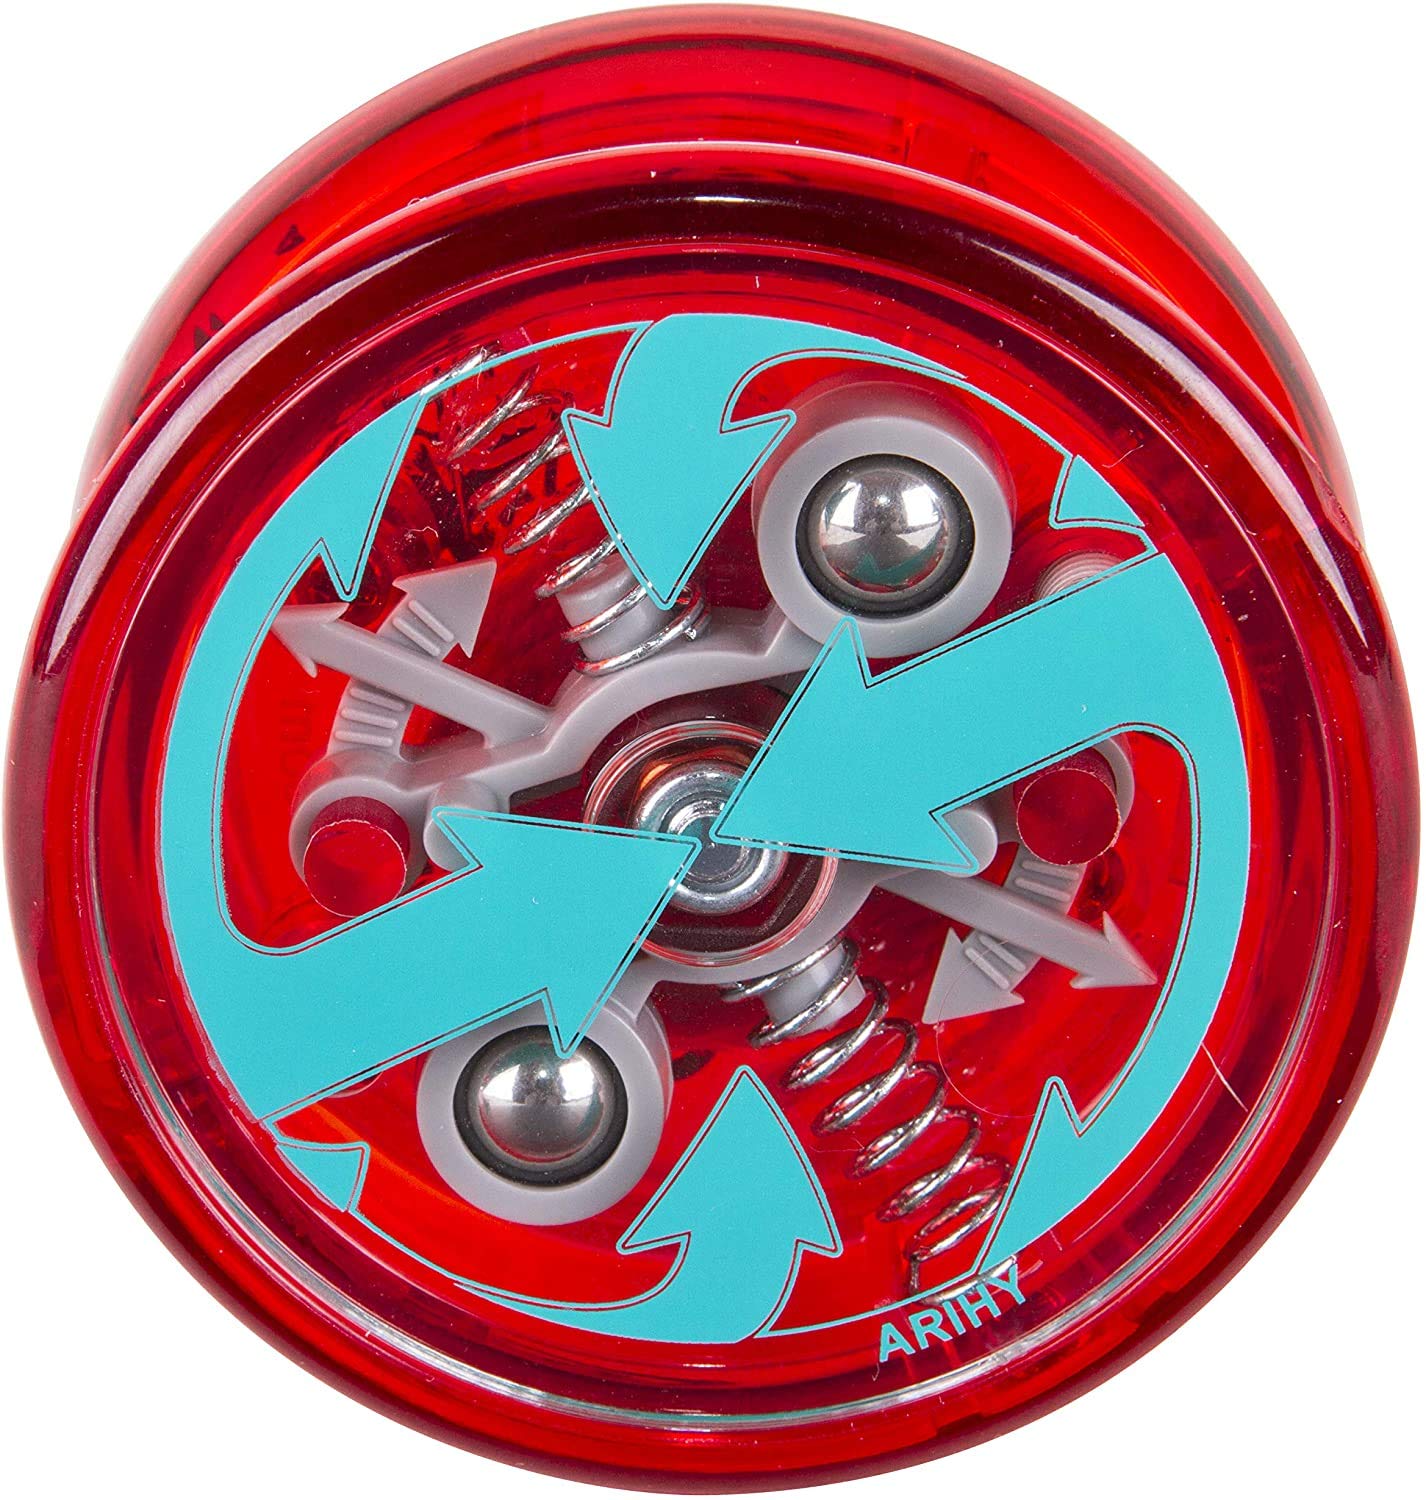 Duncan Toys Reflex Auto Return Yo-Yo, Beginner String Trick Yo-Yo, Red